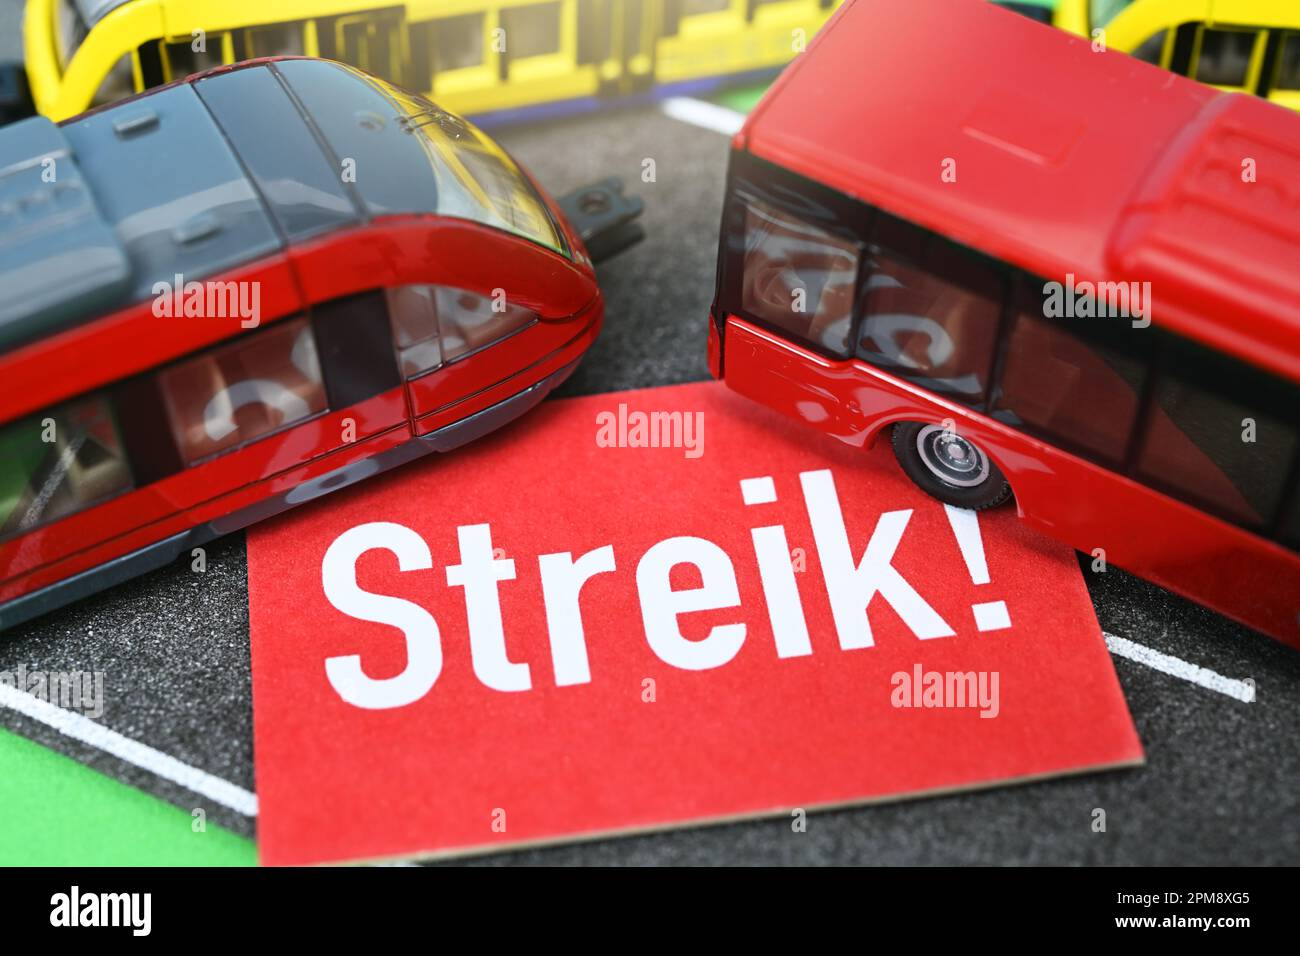 Minitaturen von Bus und Bahn mit einem Streik-Schild, Streik im ÖPNV Stock Photo